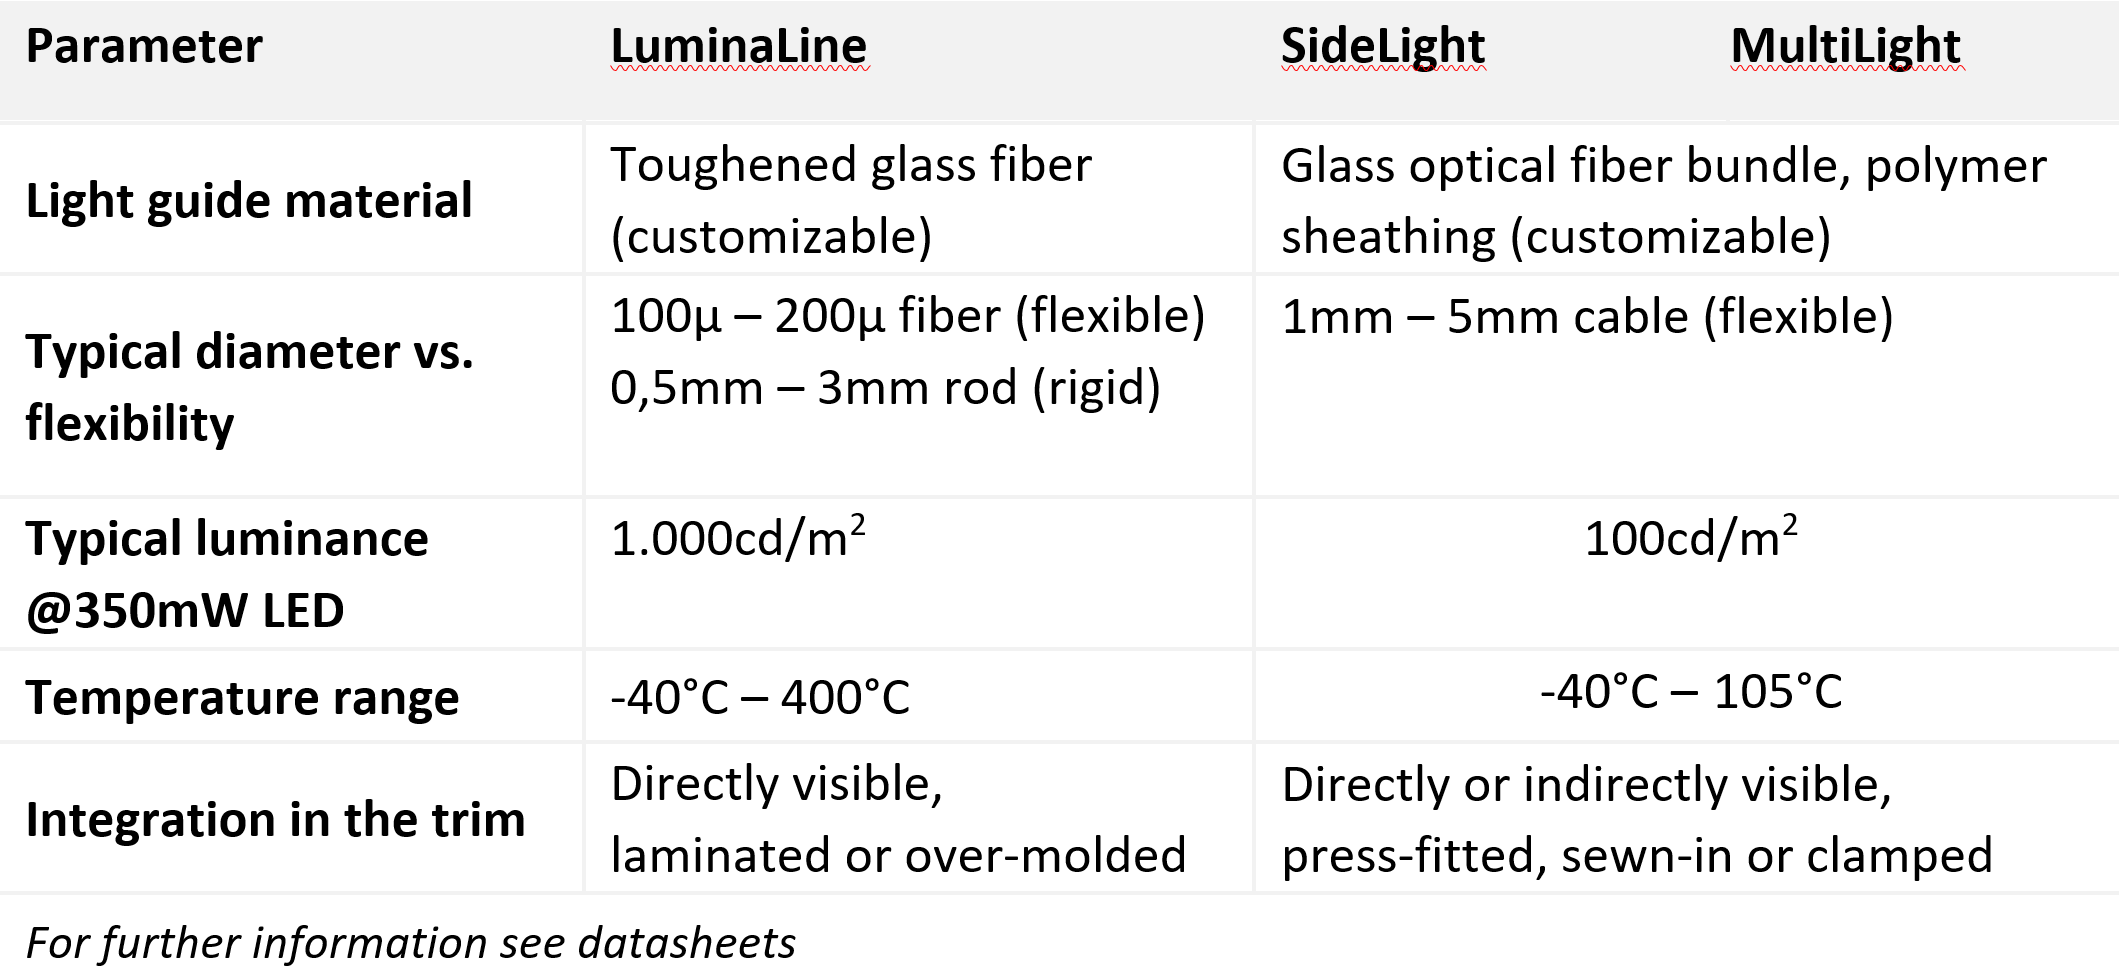 LuminaLine、Sidelight 和 MultiLight 的技术特性图示